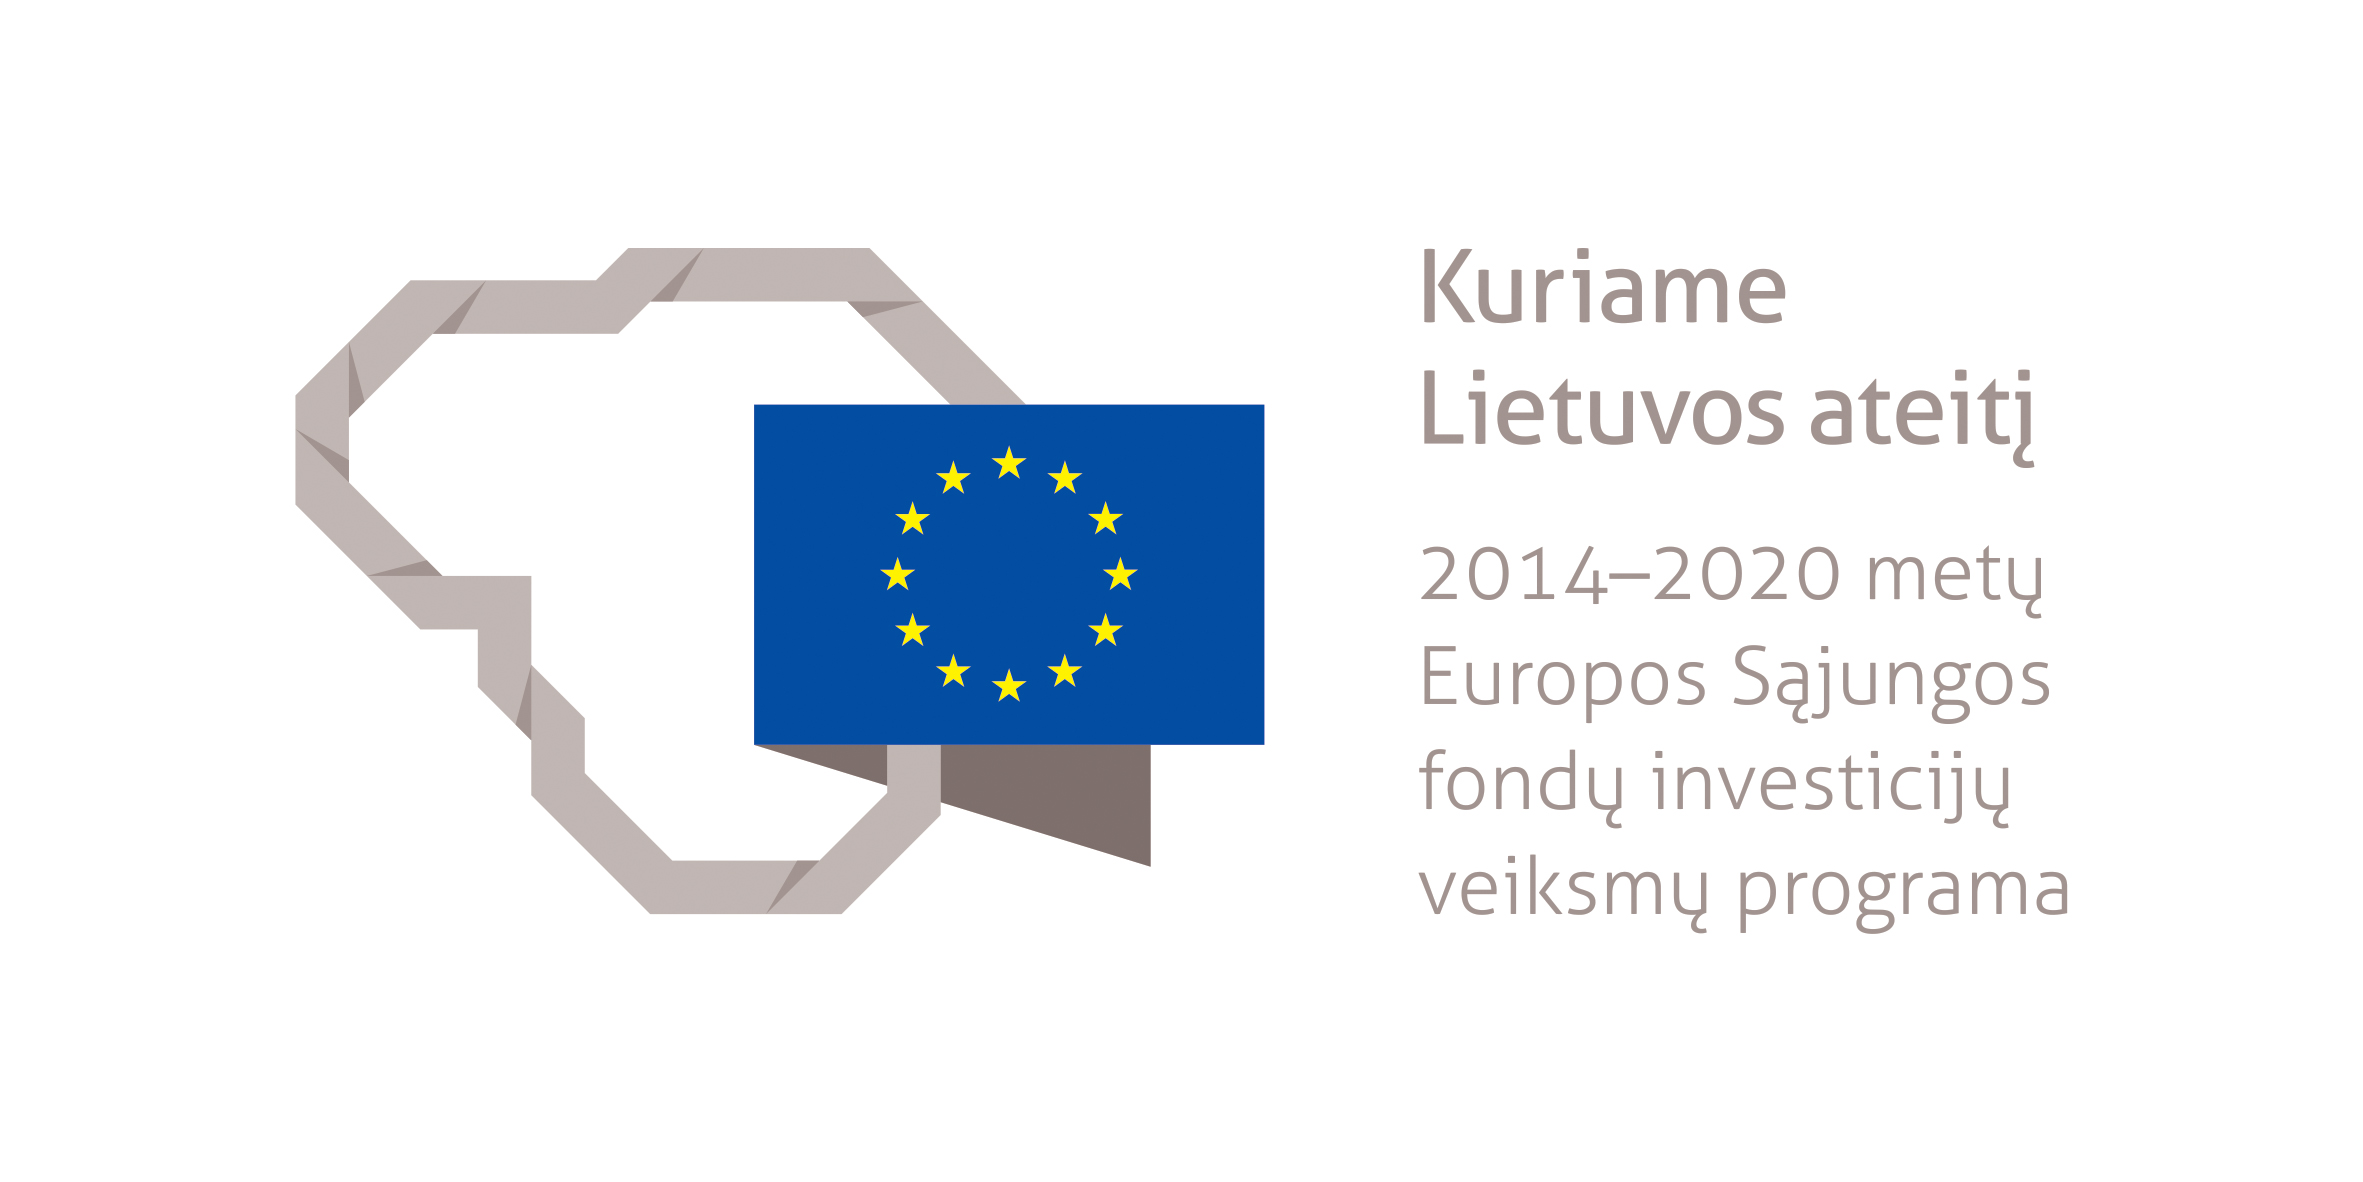 Projektas bendrai finansuotas iš Europos socialinio fondo lėšų (projekto Nr. 09.3.3-LMT-K-712-23-0160) pagal dotacijos sutartį su Lietuvos mokslo taryba (LMTLT)